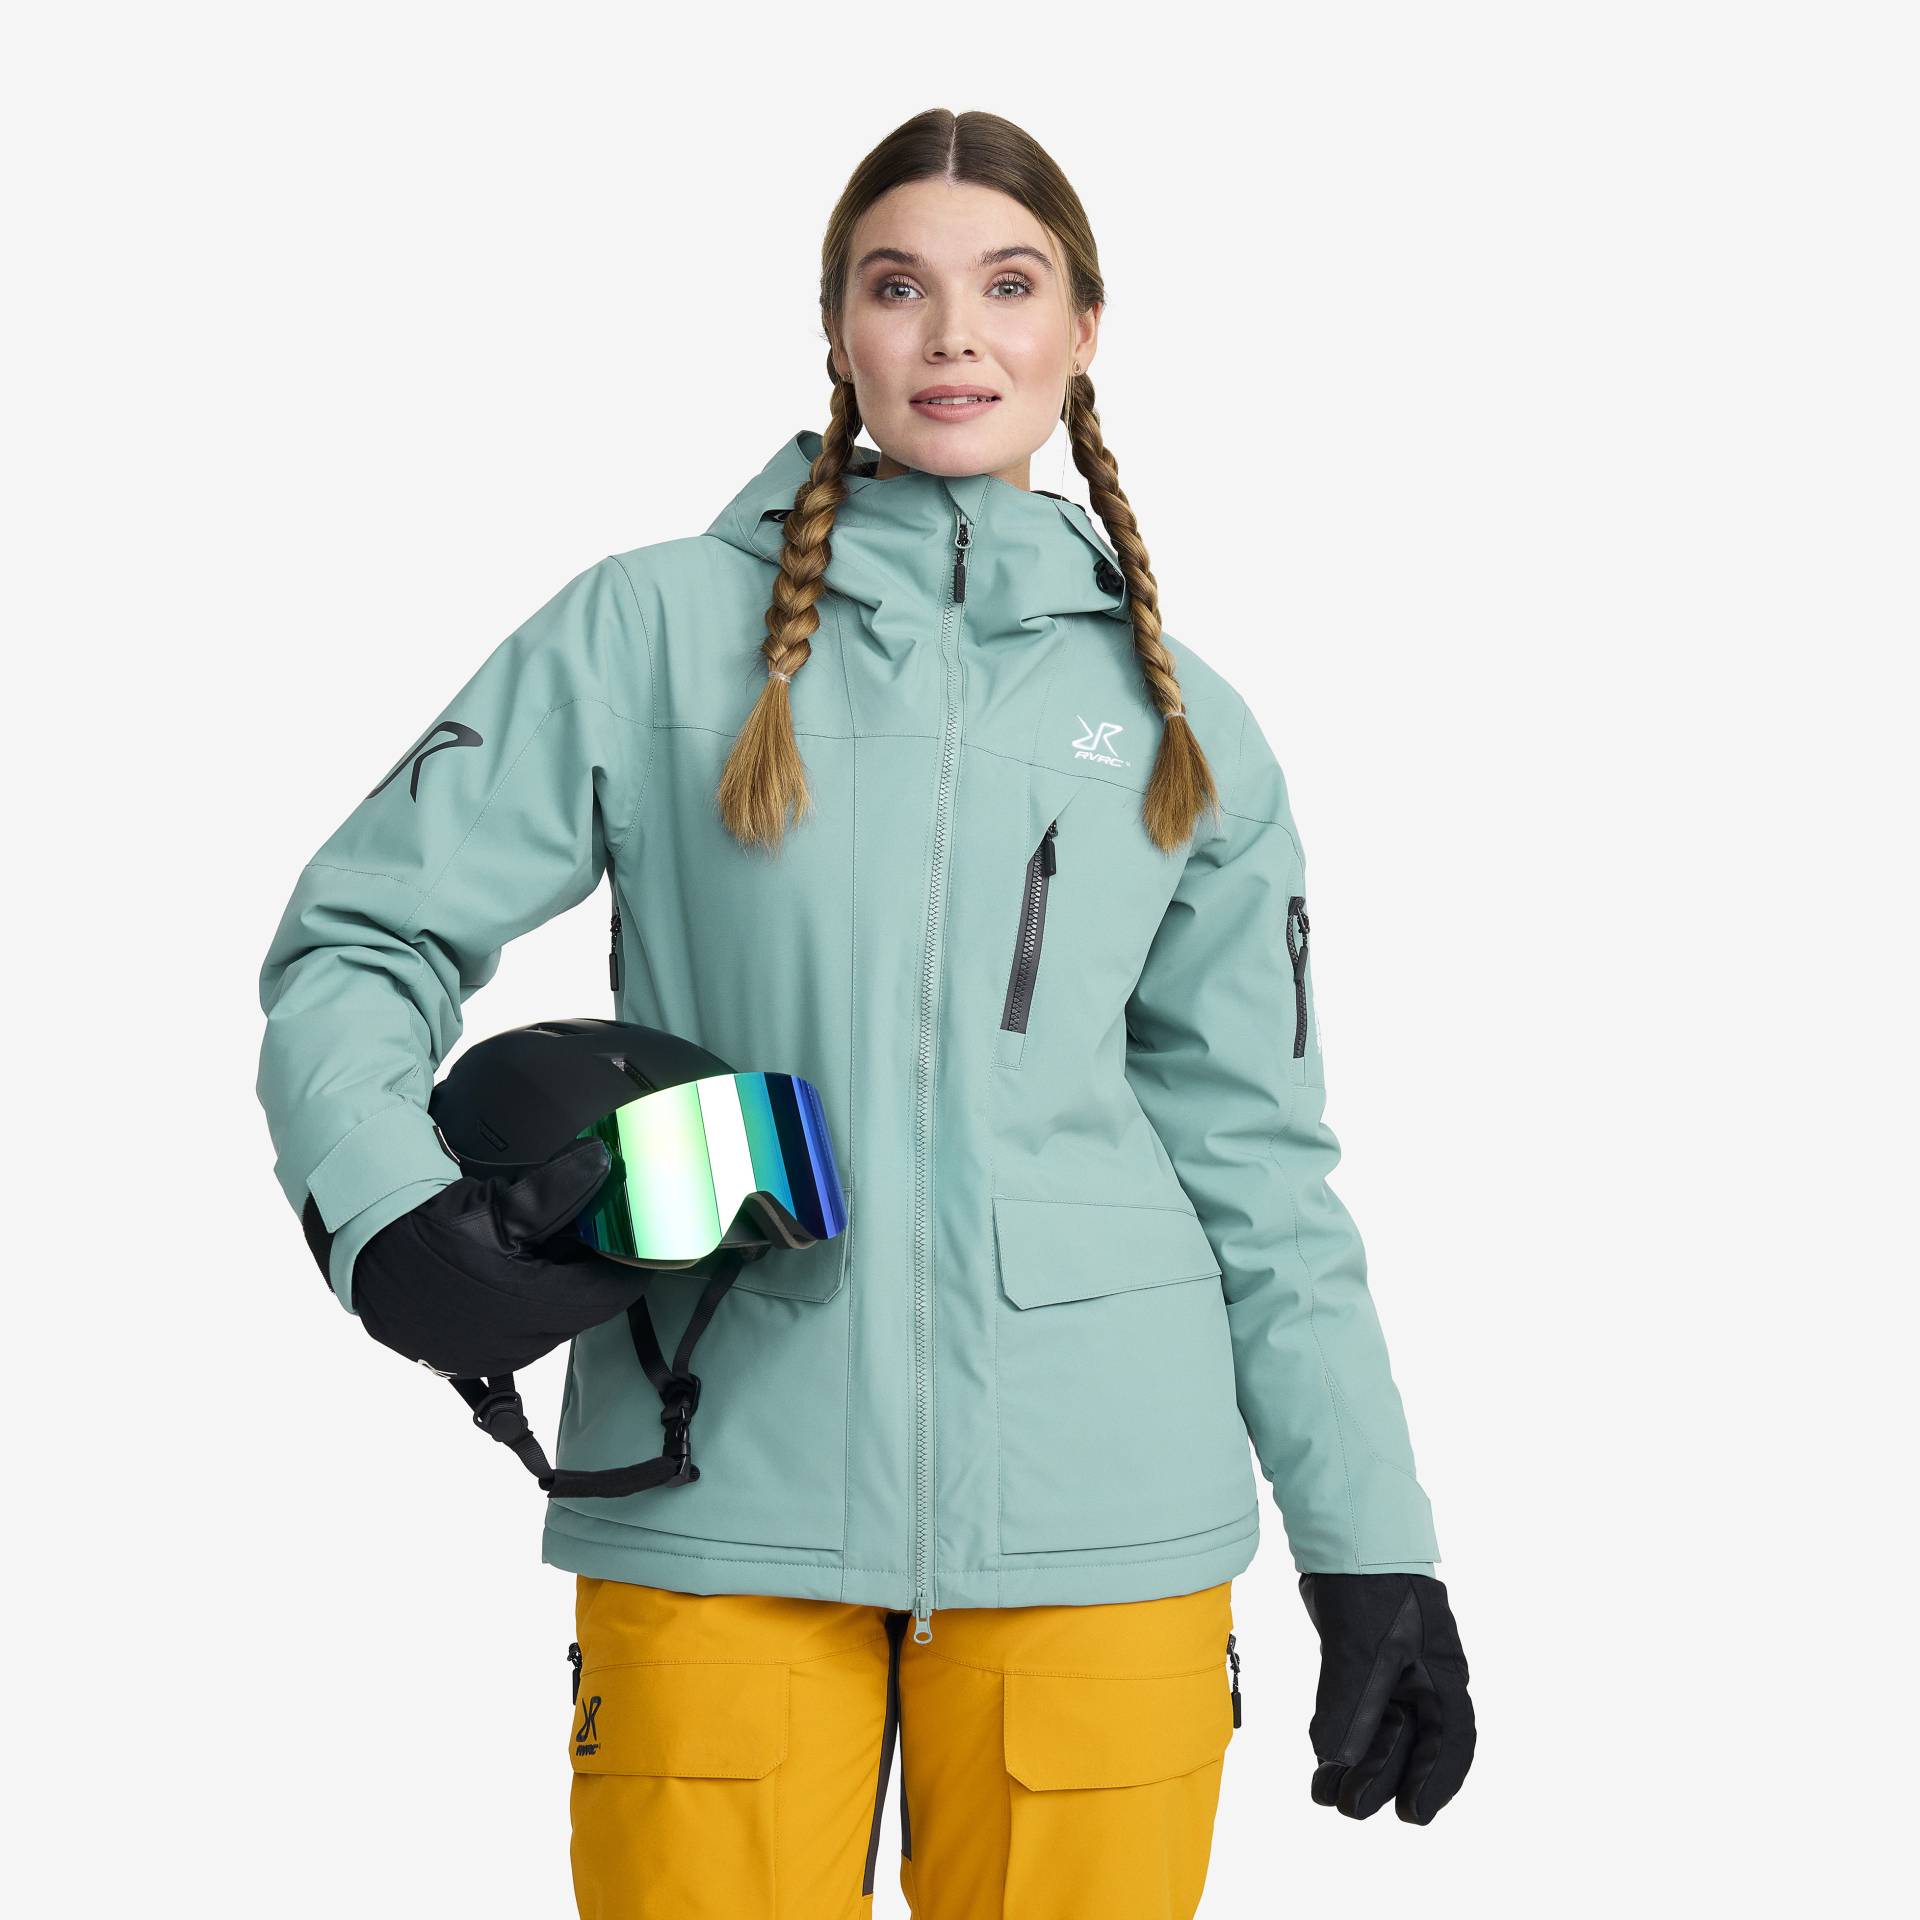 Halo 2L Insulated Ski Jacket Damen Arctic, Größe:L - Skijacken von RevolutionRace